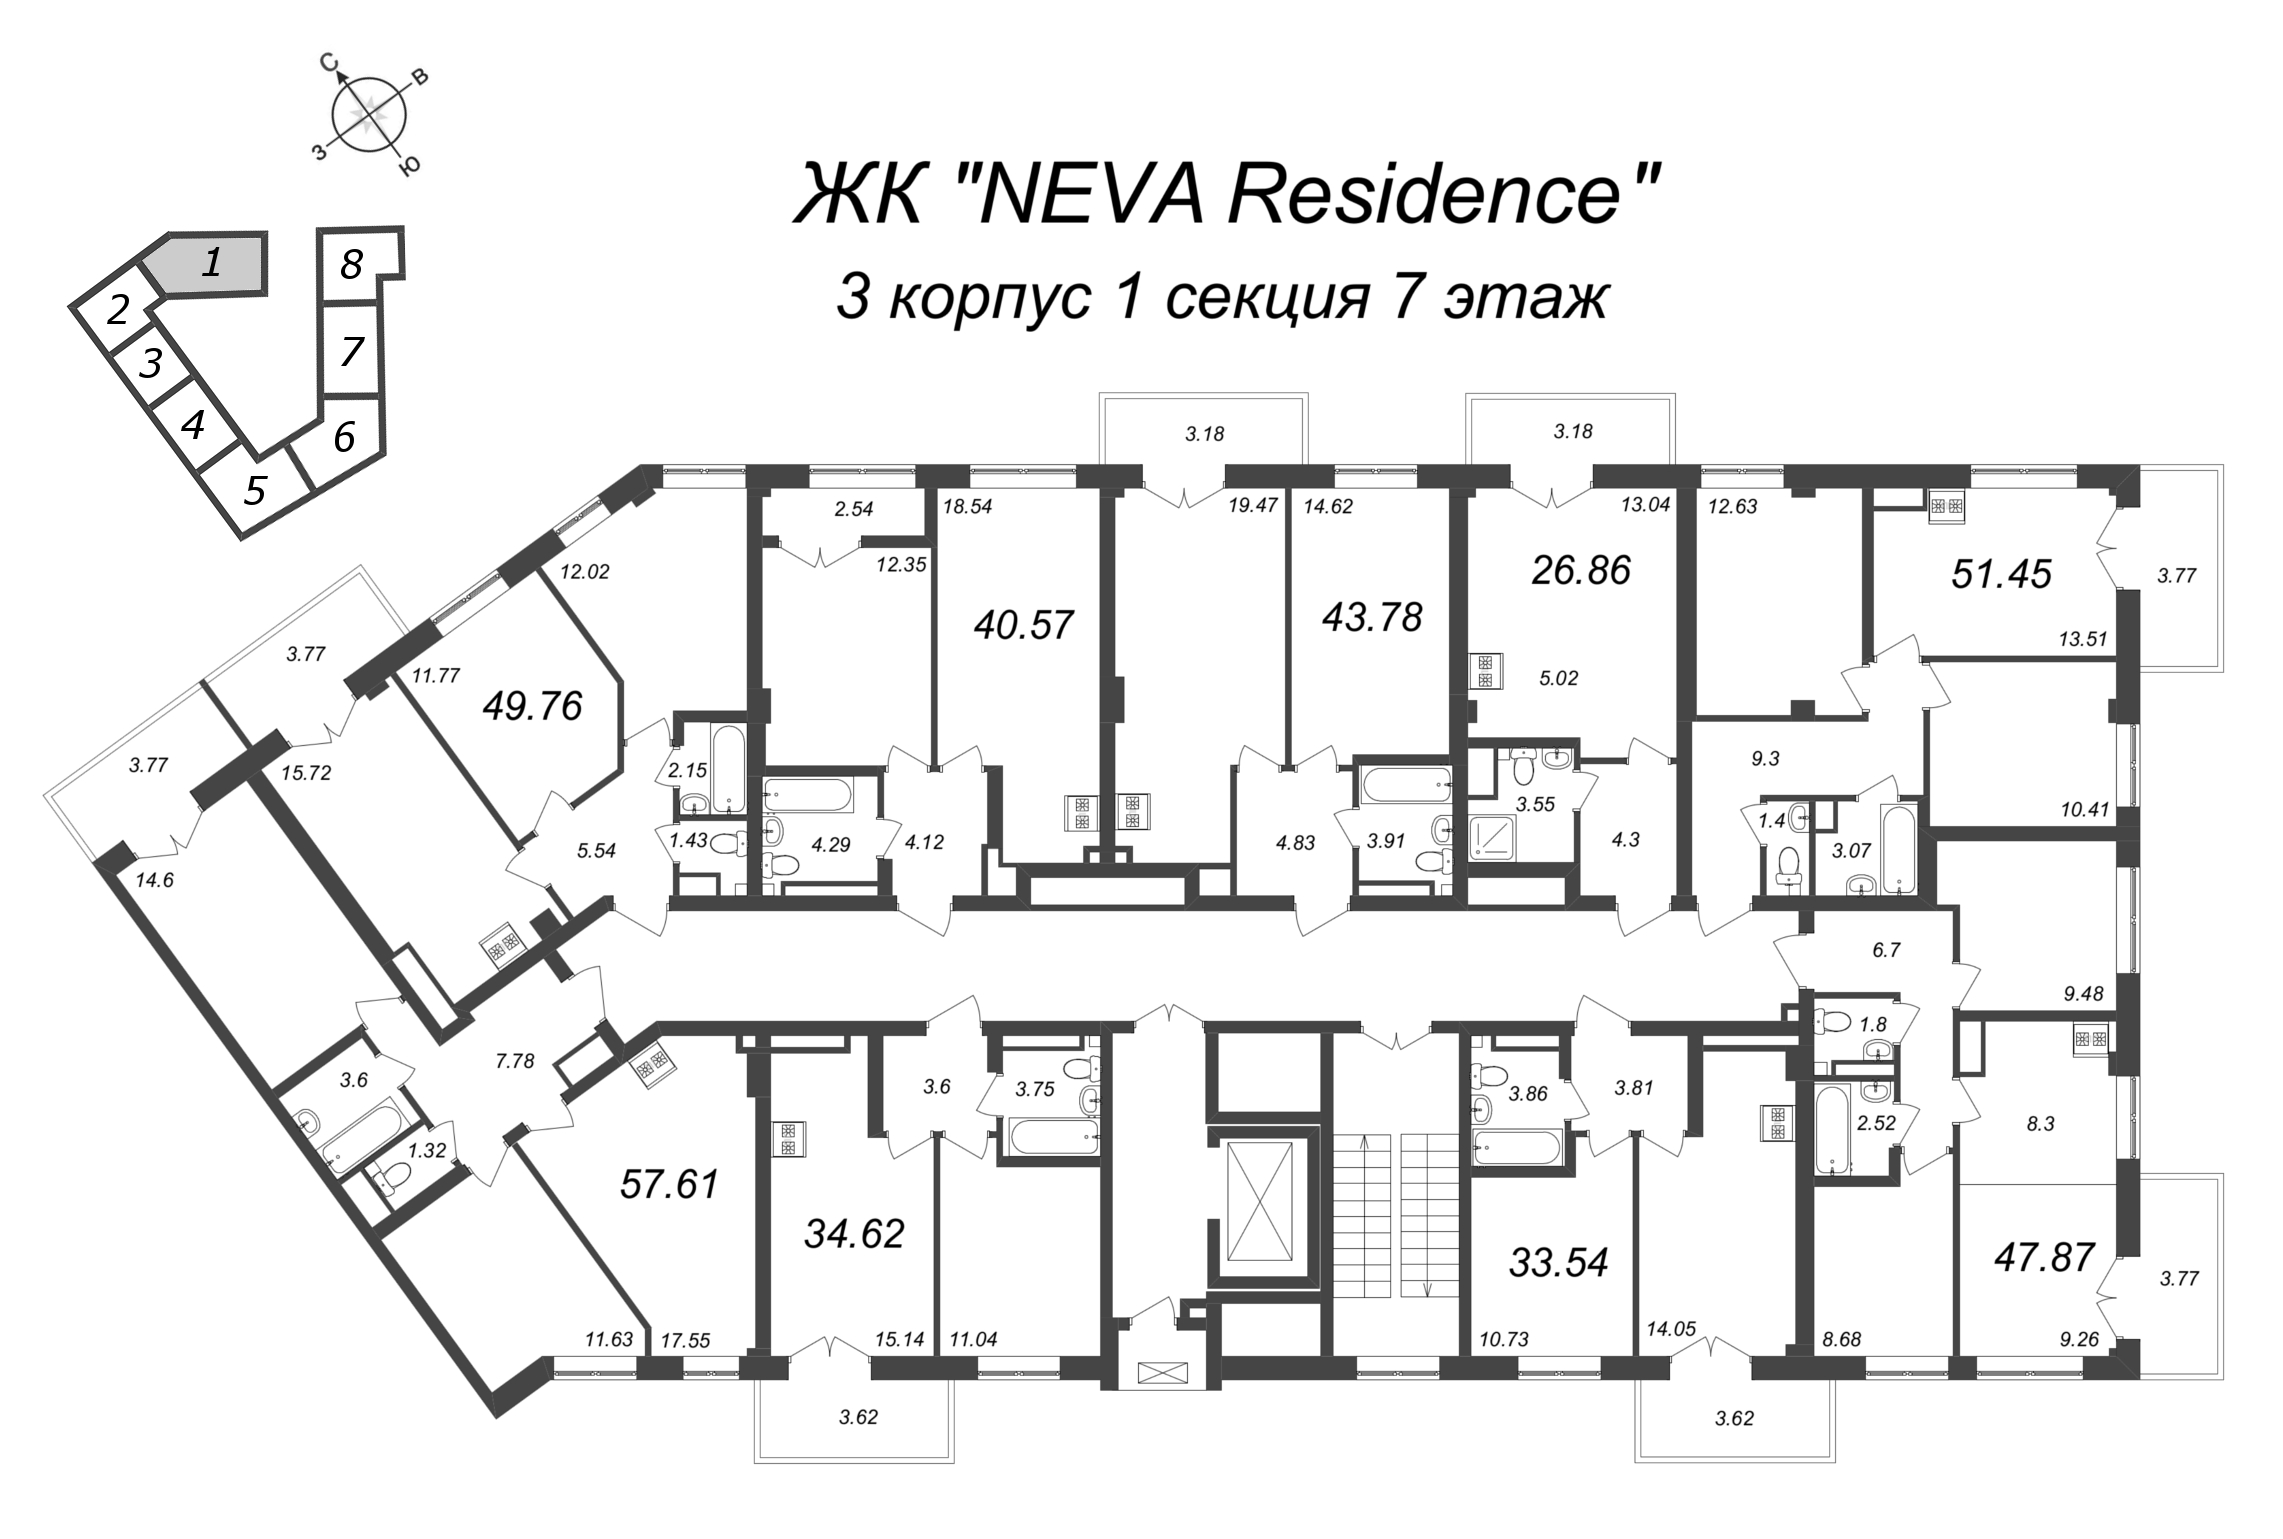 Квартира-студия, 26.86 м² в ЖК "Neva Residence" - планировка этажа